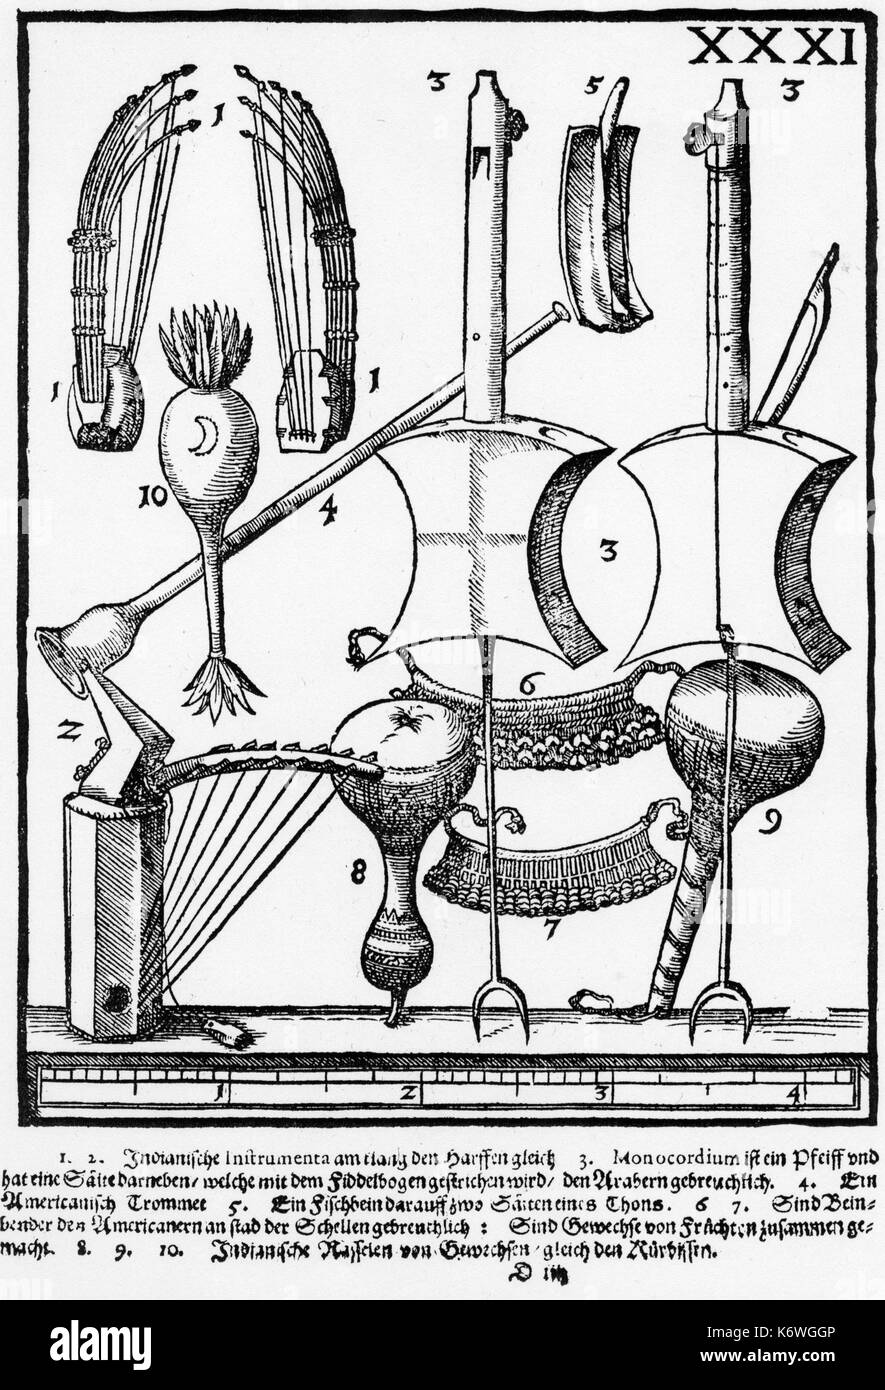 Nativi americani piastra strumenti XXXI da PRAETORIUS "yntagma Musicum" (1619): American Indian strumenti, compresi piegò monocordo tipo di arpa; battito; caviglia campane; Foto Stock